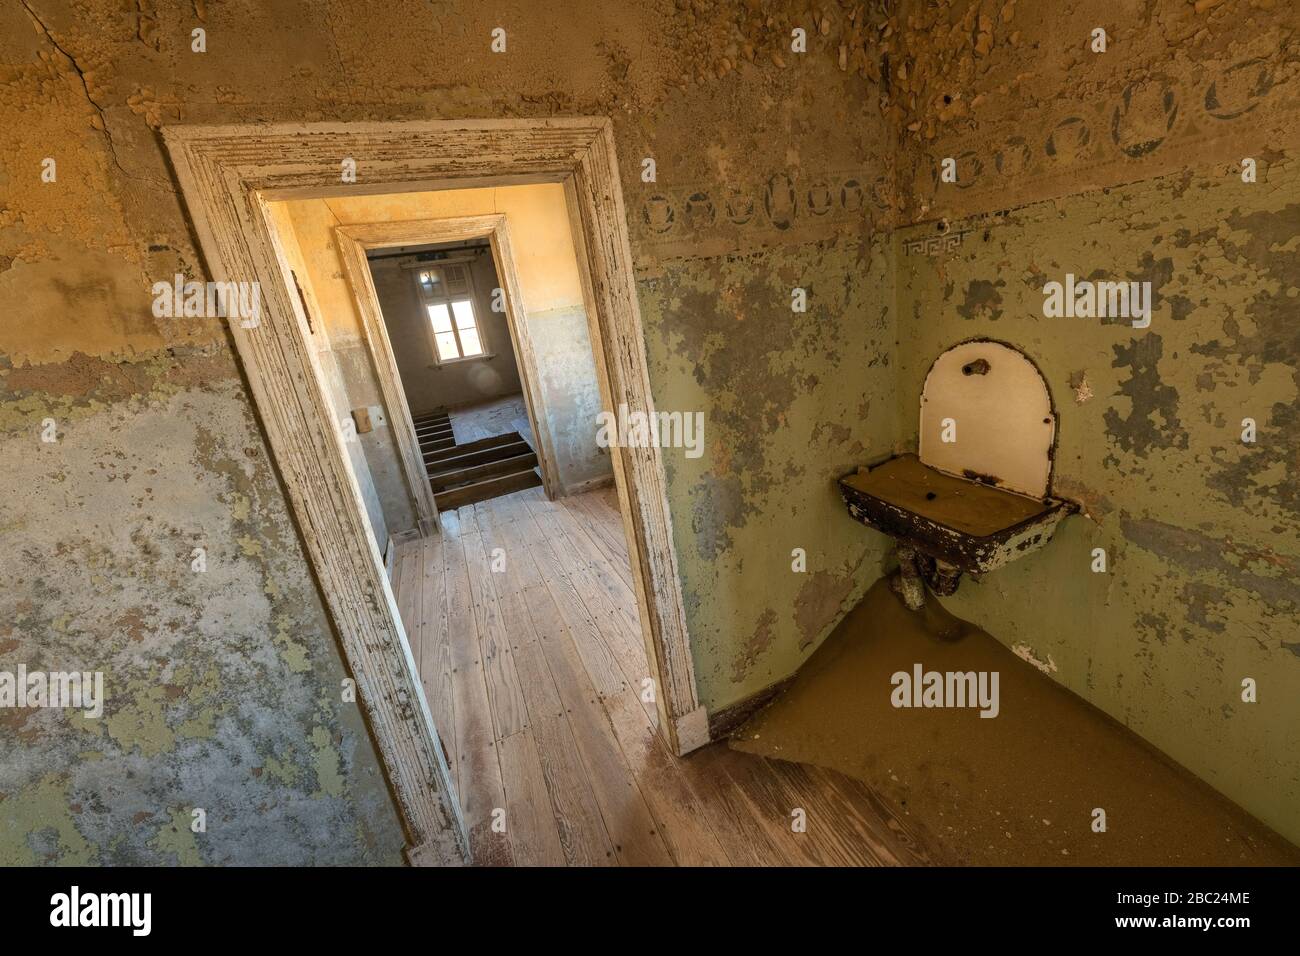 Una fotografía de un antiguo lavabo y una puerta que conduce a una habitación abandonada, tomada en la ciudad fantasma de Kolmanskop, Namibia. Foto de stock